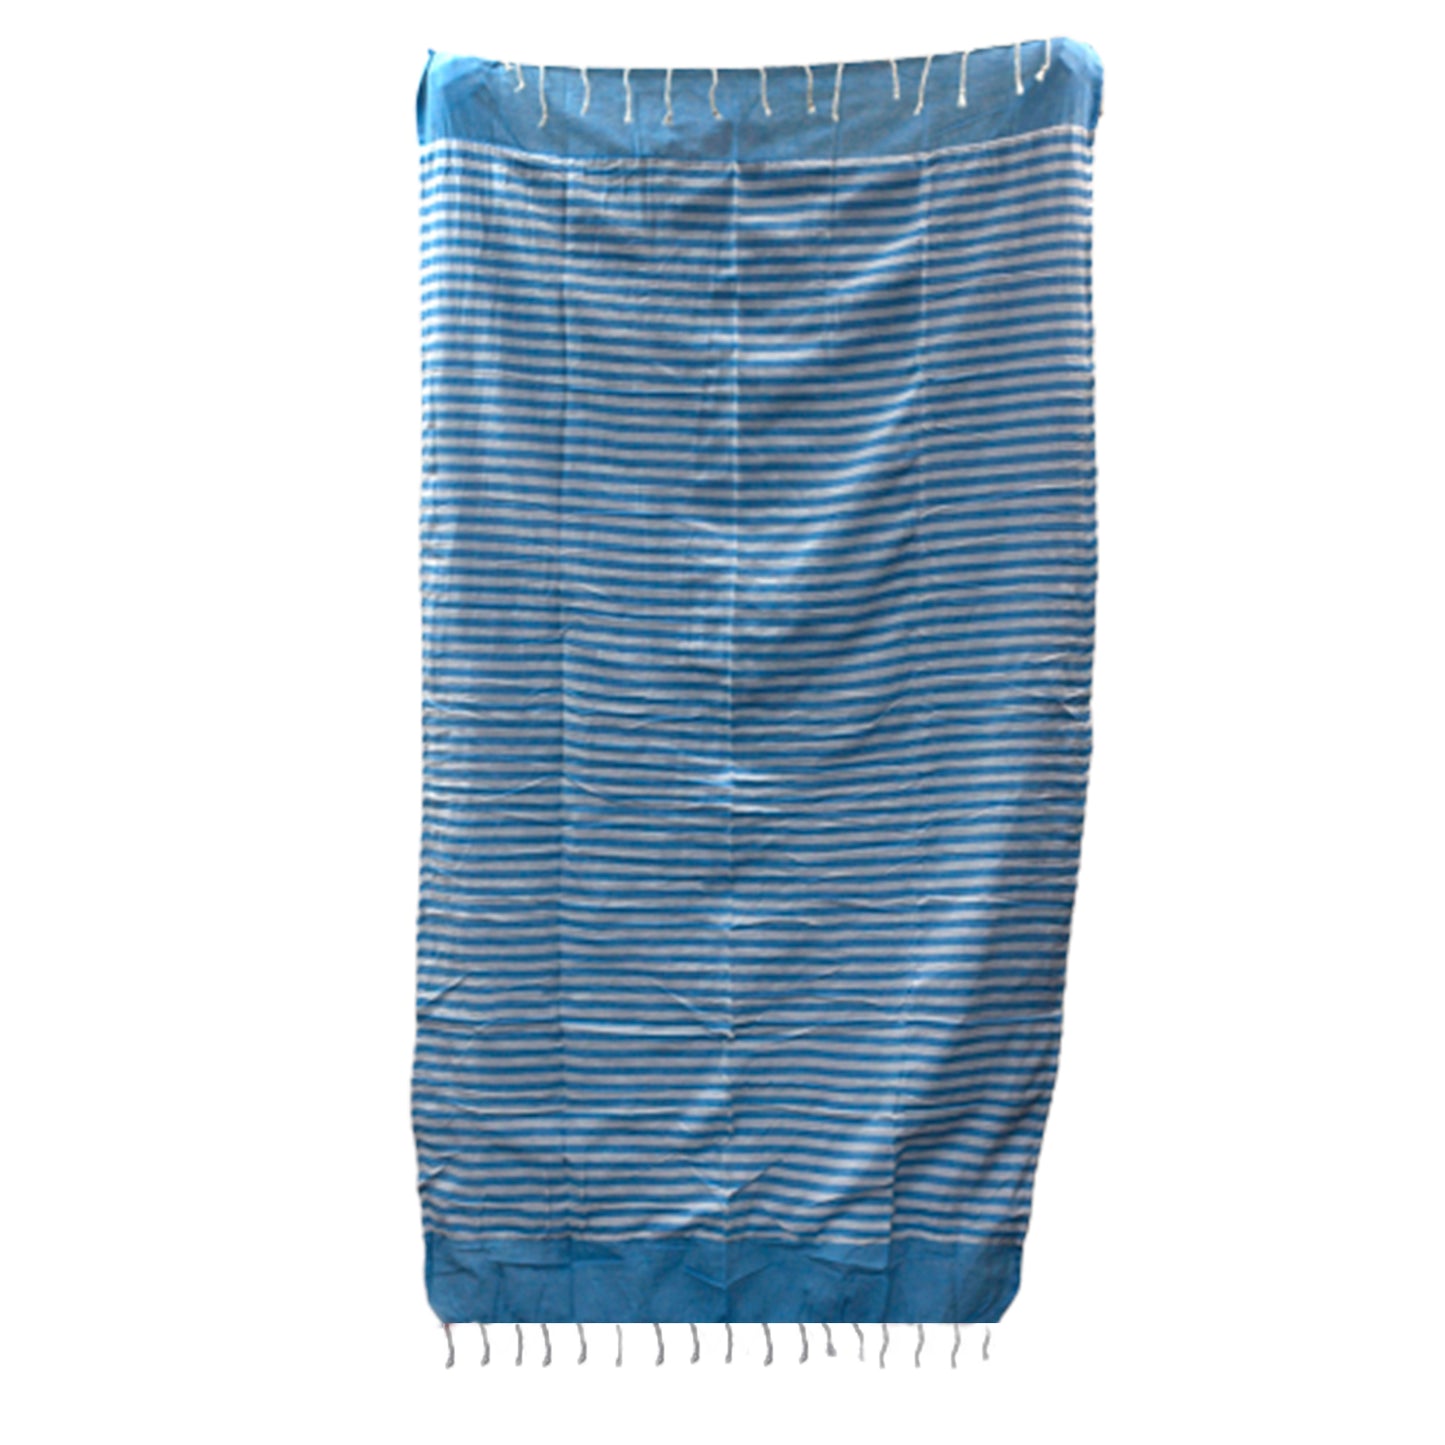 Cotton Pario Towel - 100x180 cm - Sky Blue - Kaftans direct